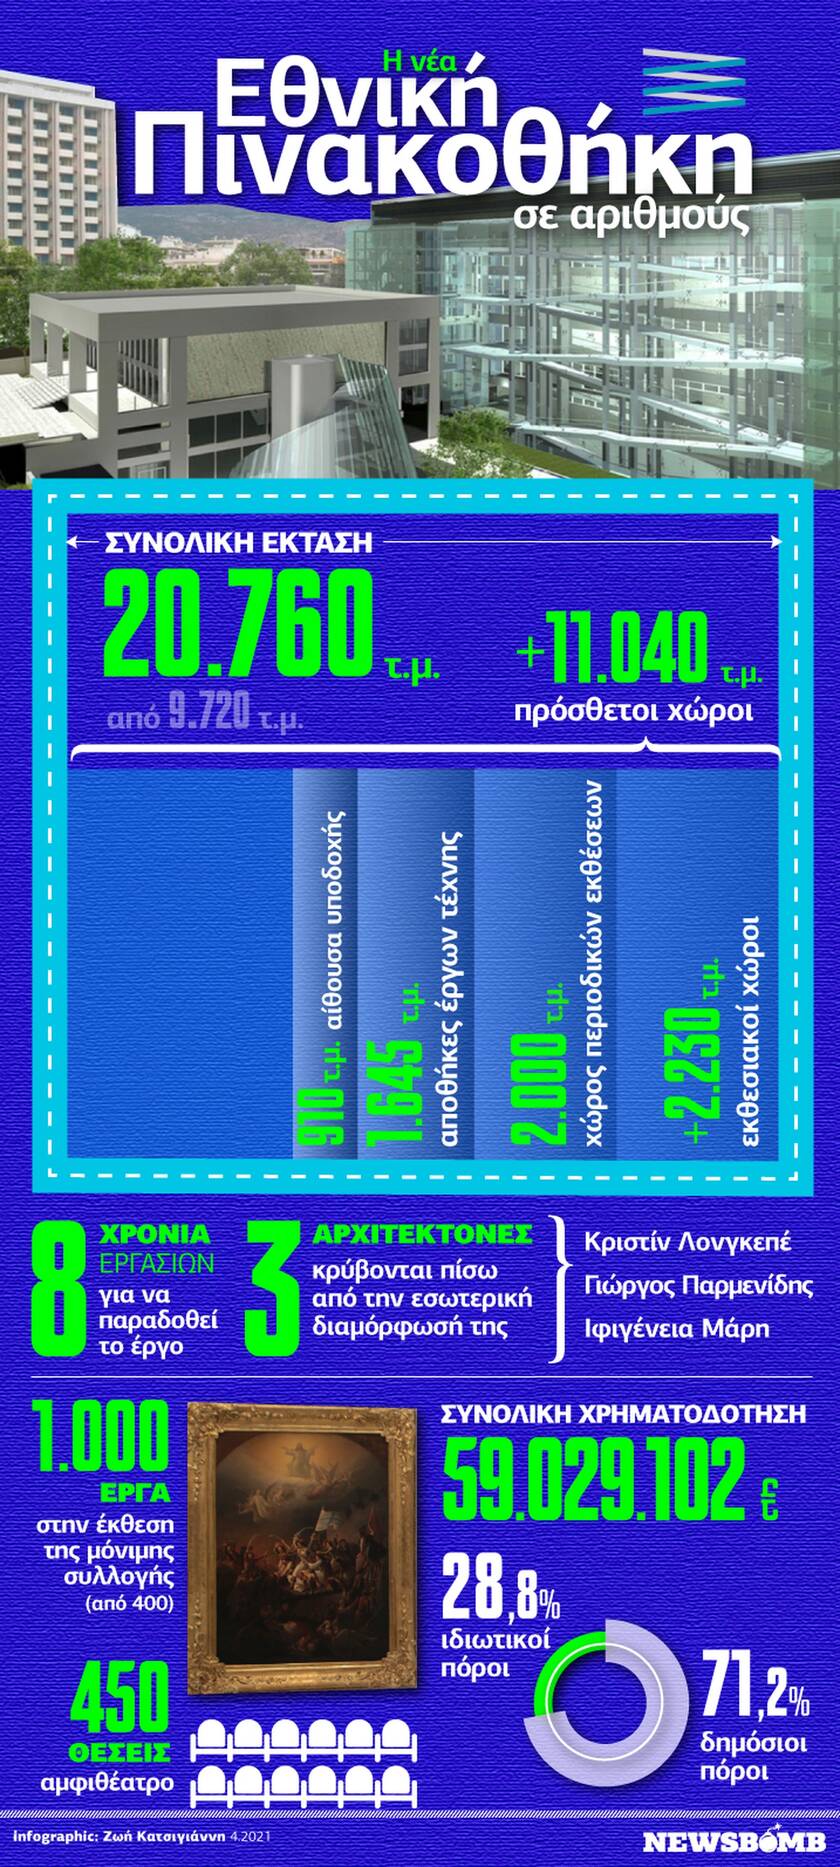 Η νέα Εθνική Πινακοθήκη σε αριθμούς – Δείτε το Infographic του Newsbomb.gr